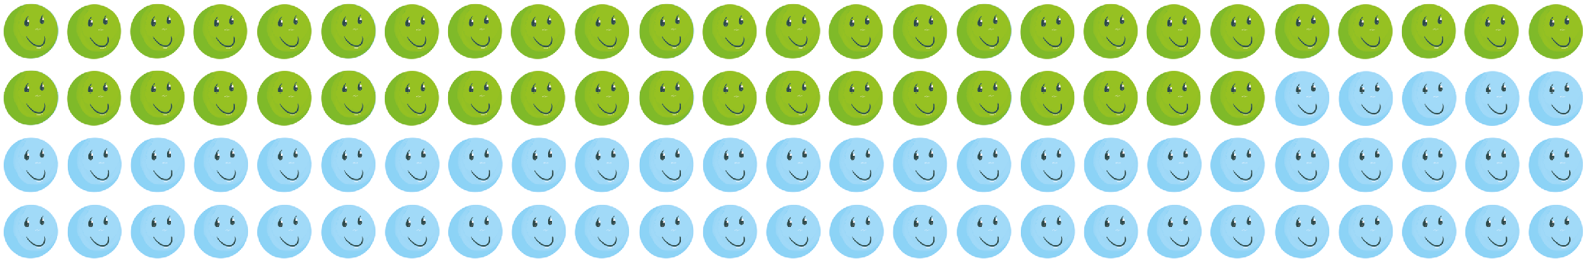 Ilustração. Quatro fileiras e 25 colunas com pictogramas de um rosto verde e um rosto azul. Há 45 rostos verdes e 55 rostos azuis.